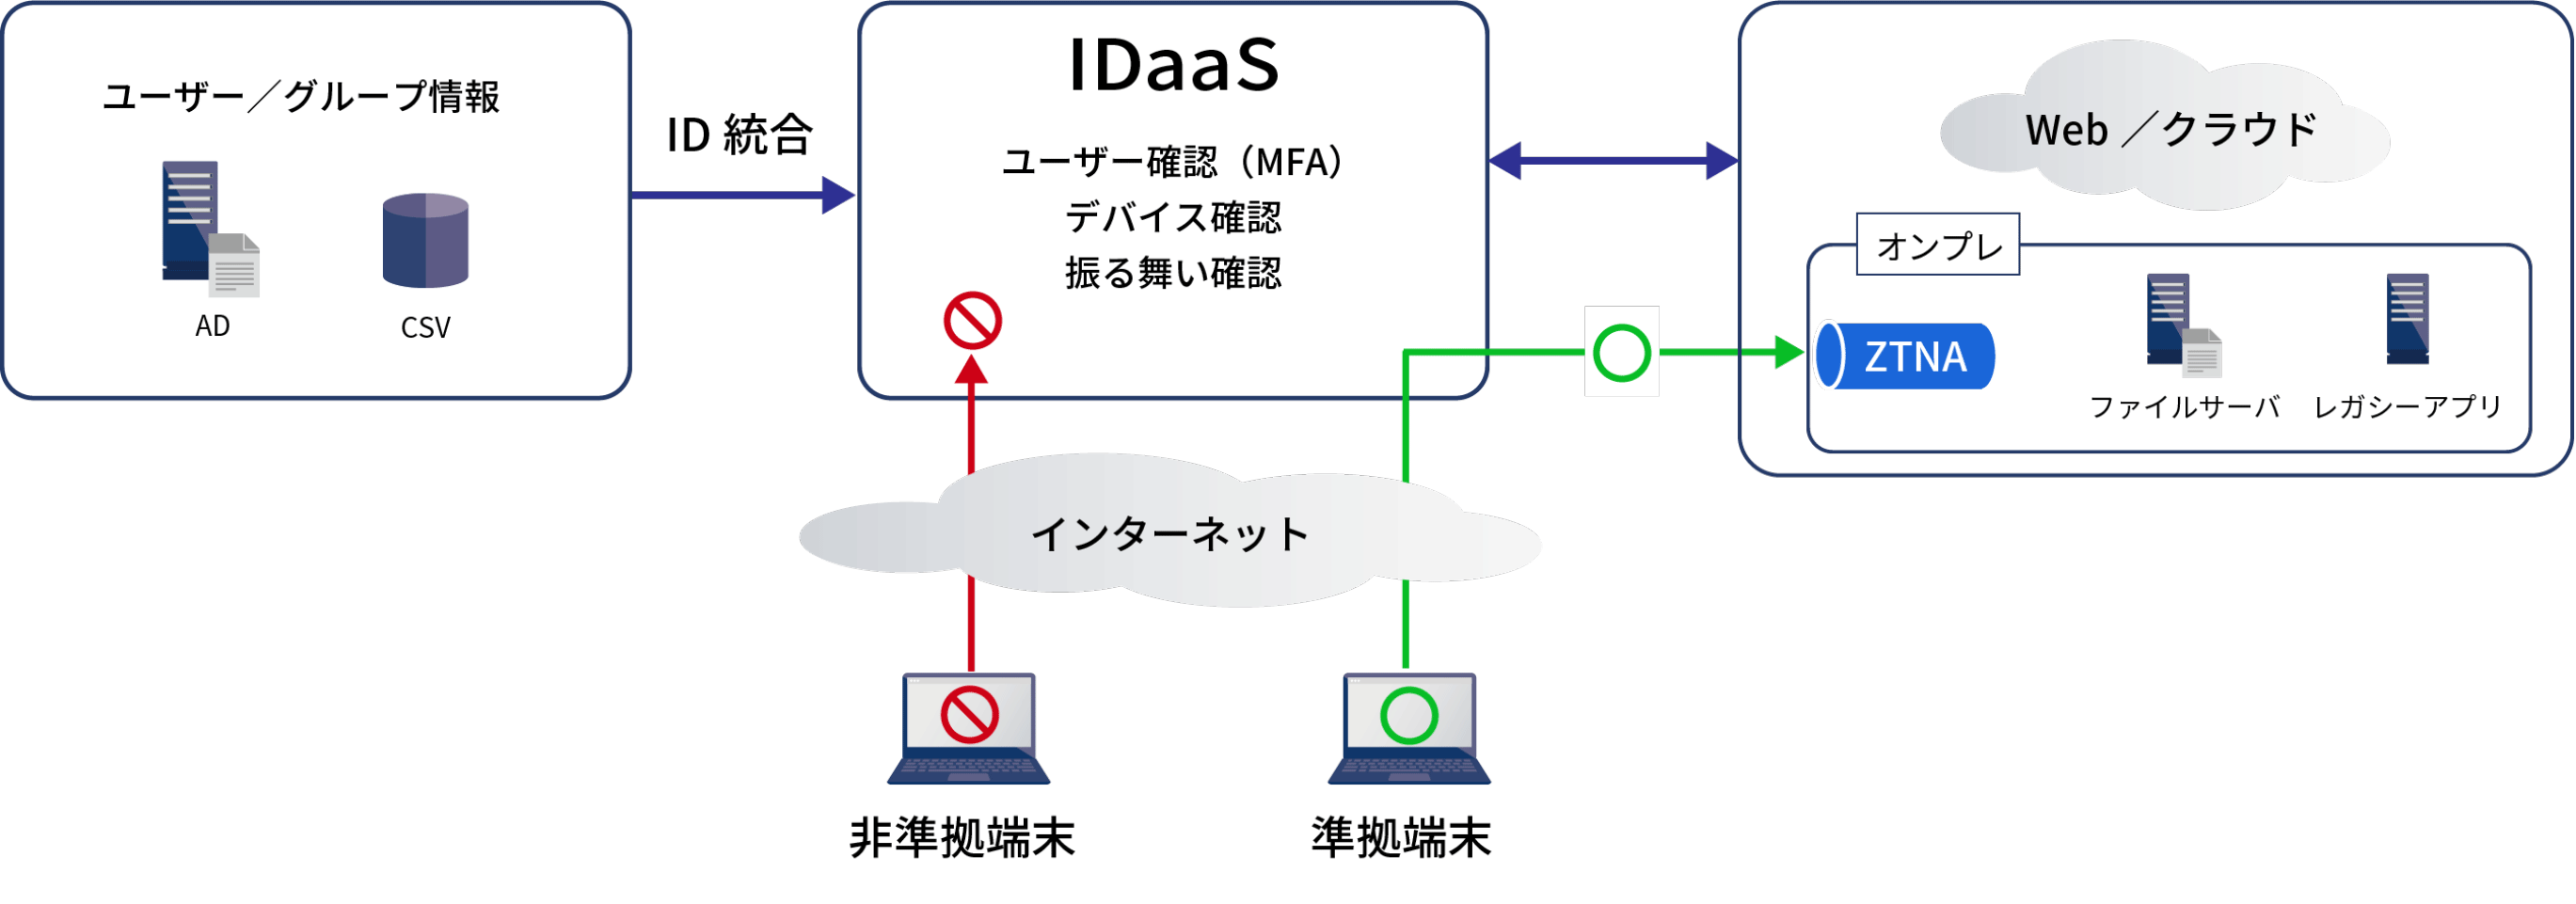 IDaaSの主な機能